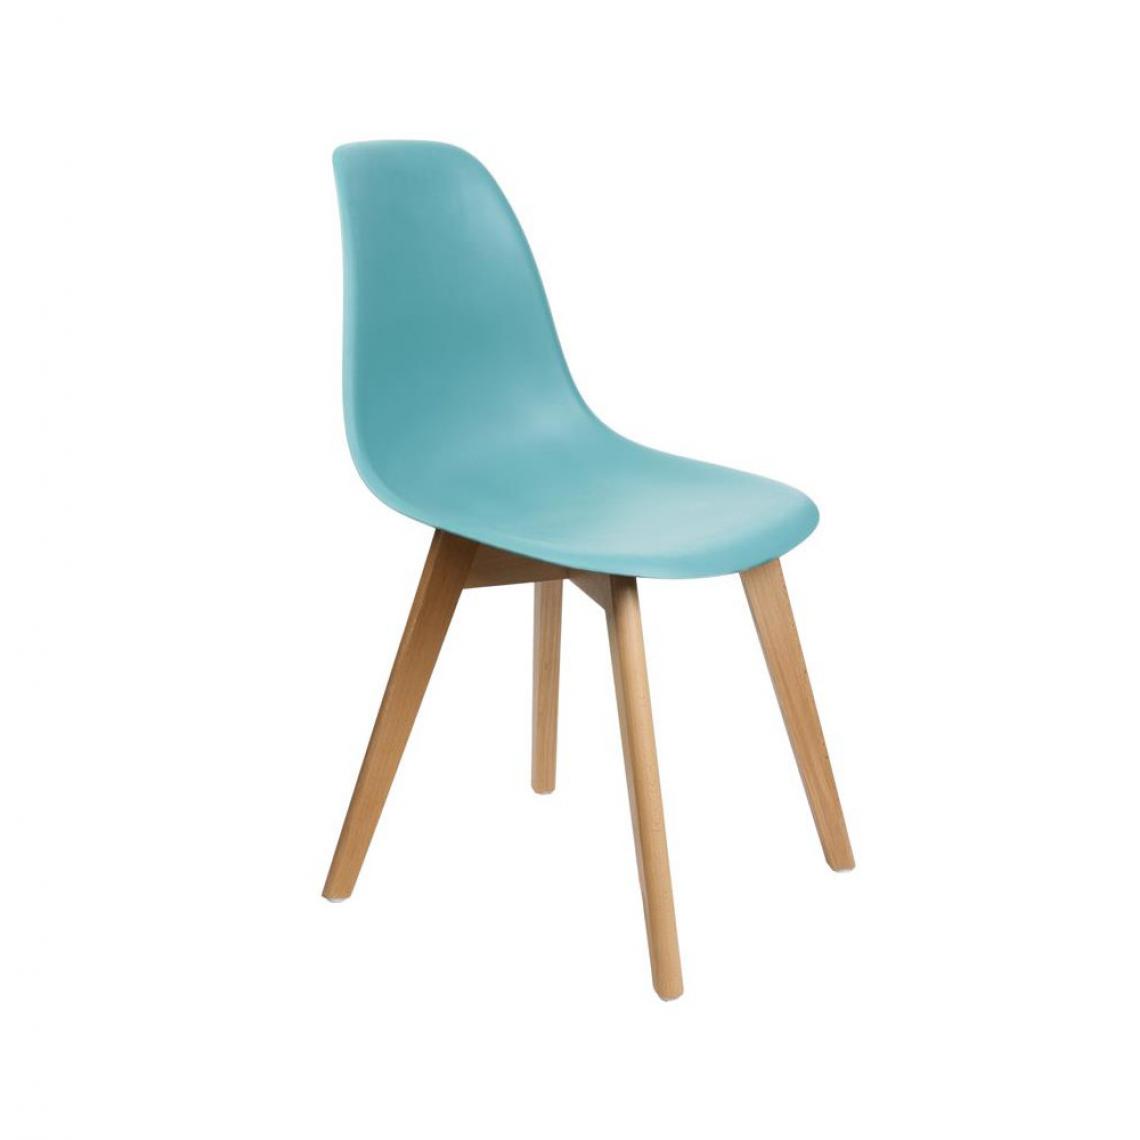 Ac-Deco - Chaise scandinave - L 46,2 x l 52 cm - Turquoise - Chaises